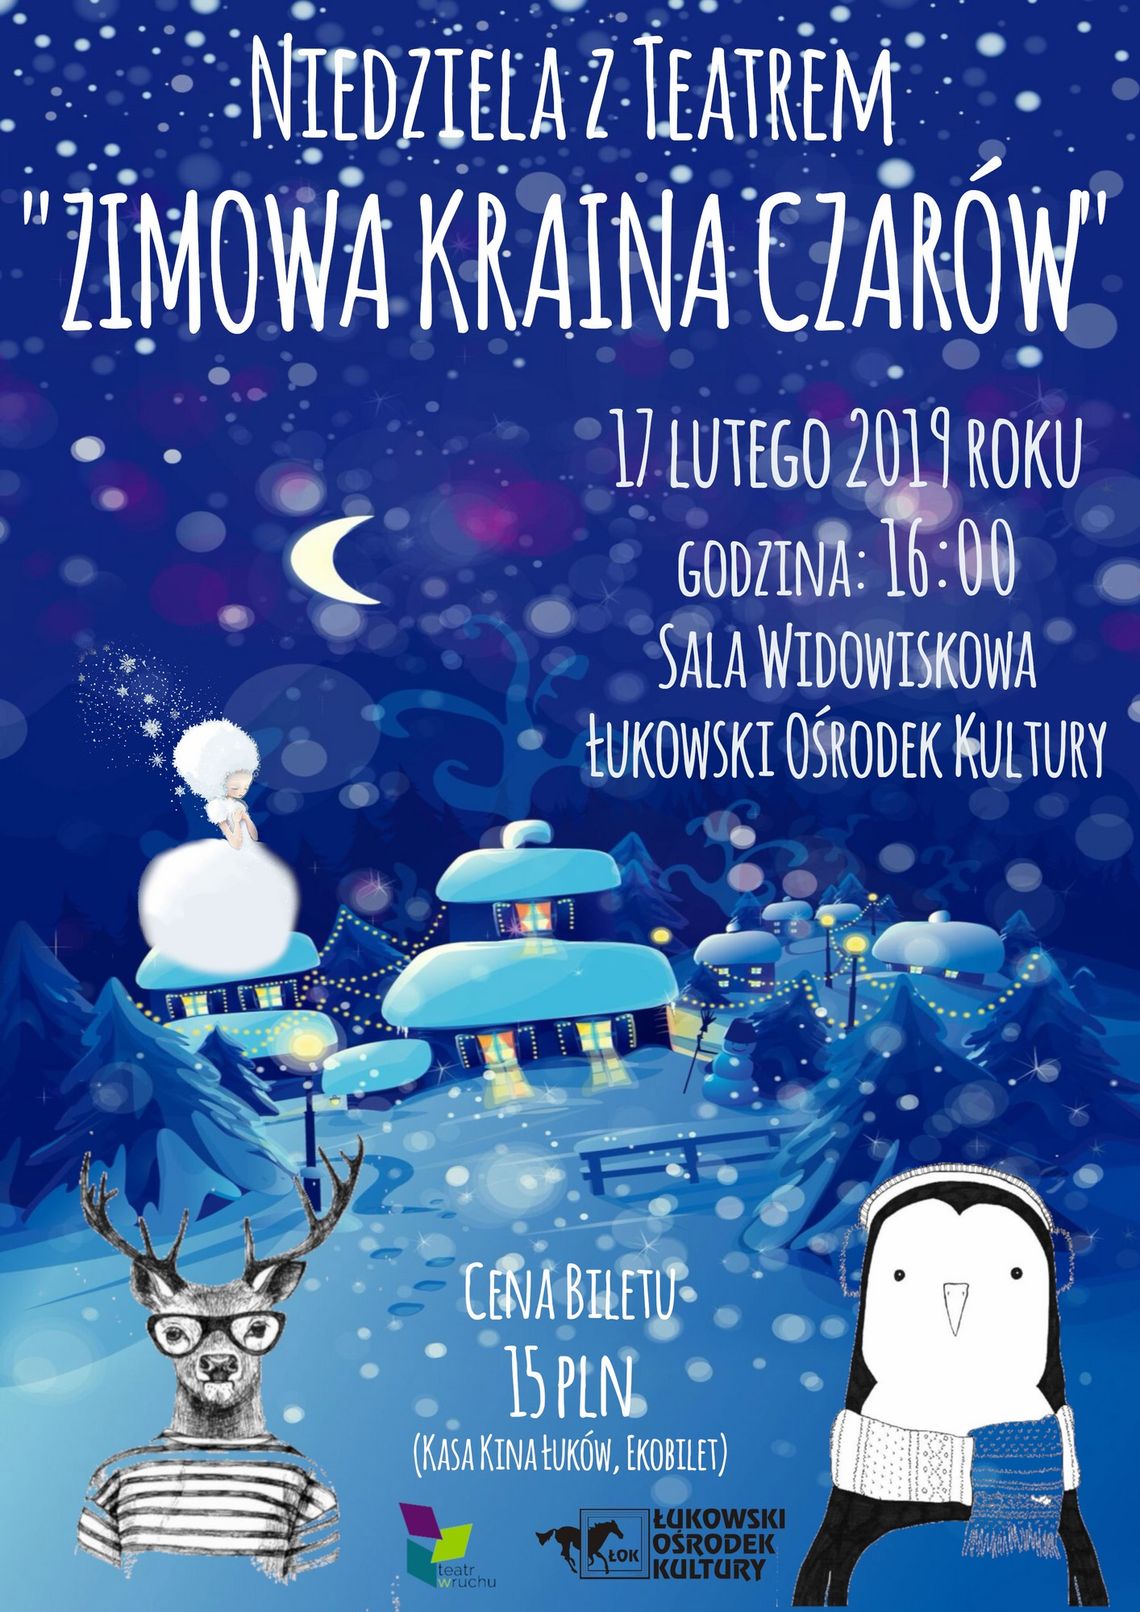 Niedziela z Teatrem "Zimowa Kraina Czarów" /17 lutego 2019